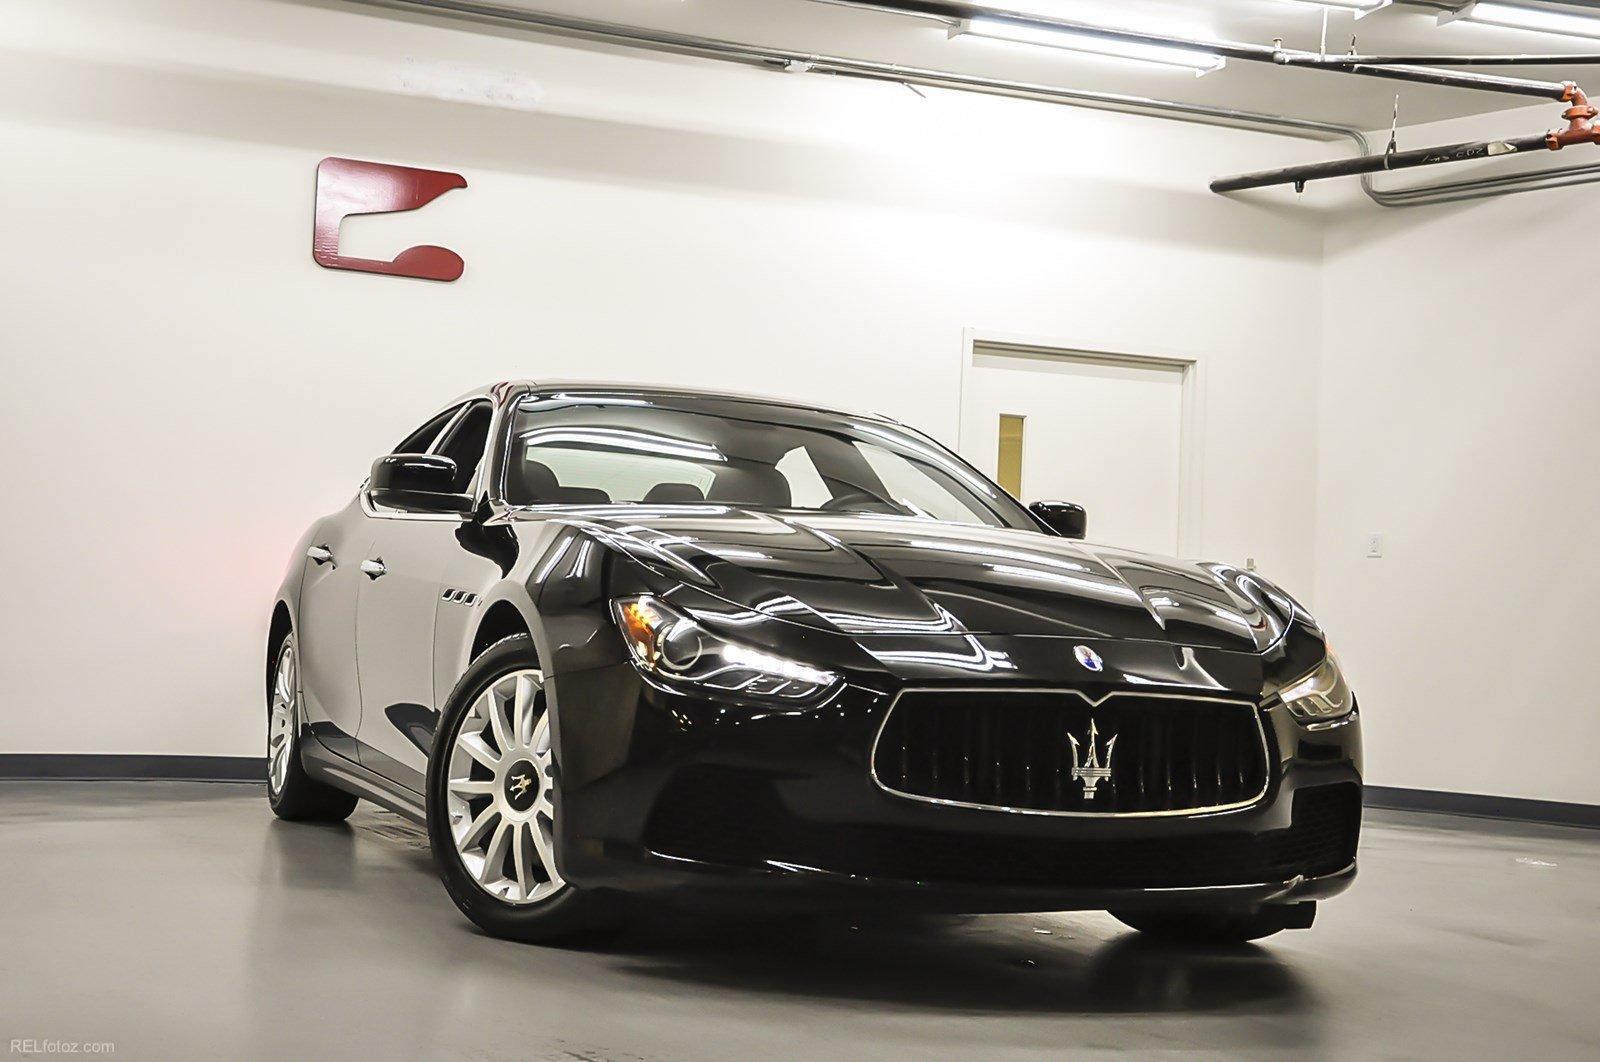 Used 2014 Maserati Ghibli for sale Sold at Gravity Autos Marietta in Marietta GA 30060 2